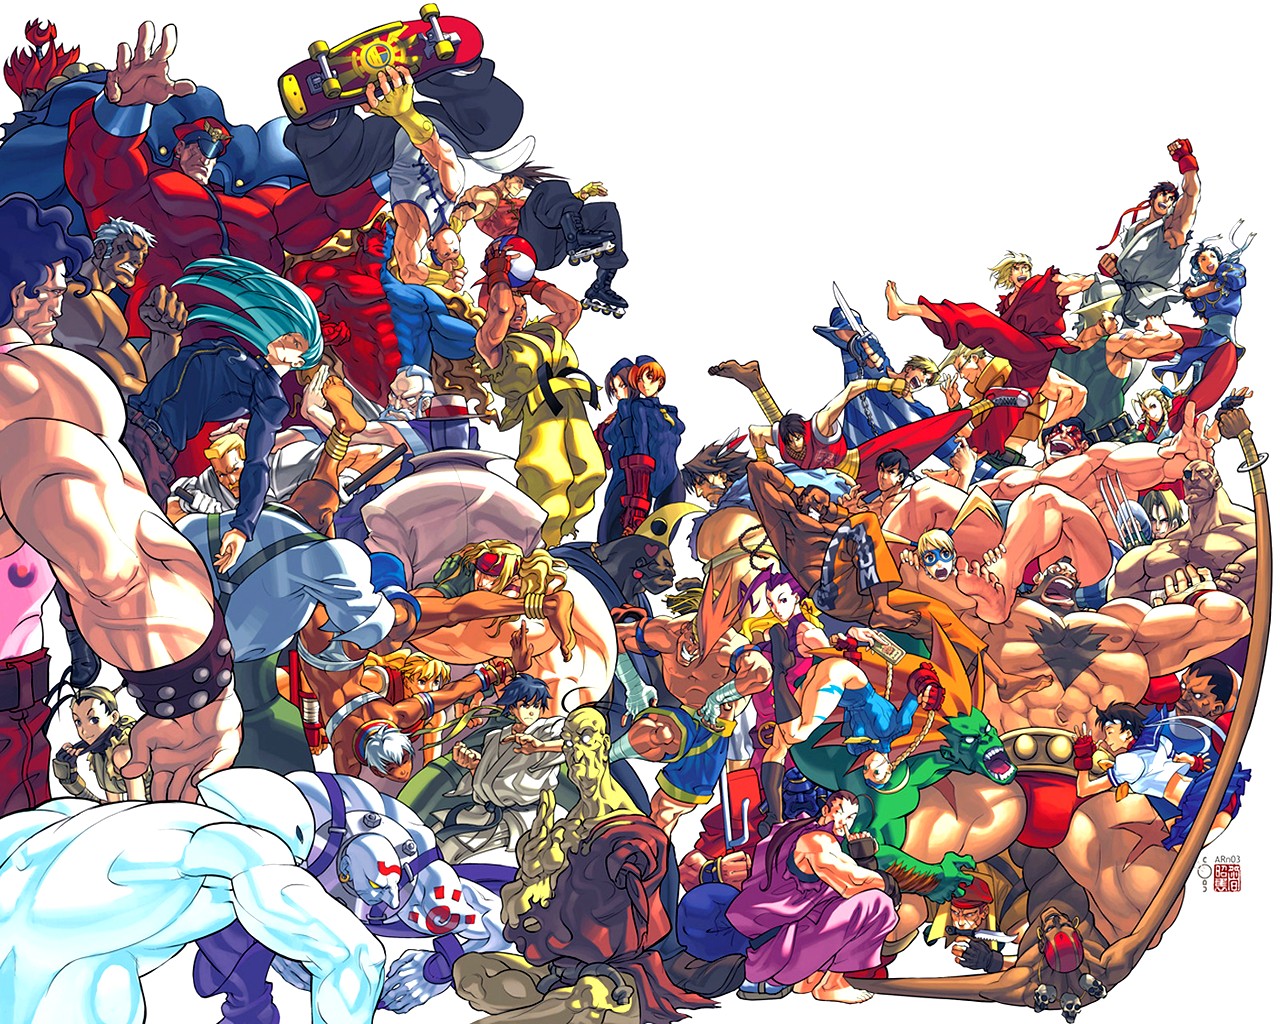 "Street Fighter" desktop wallpaper (1280 x 1024 pixels)